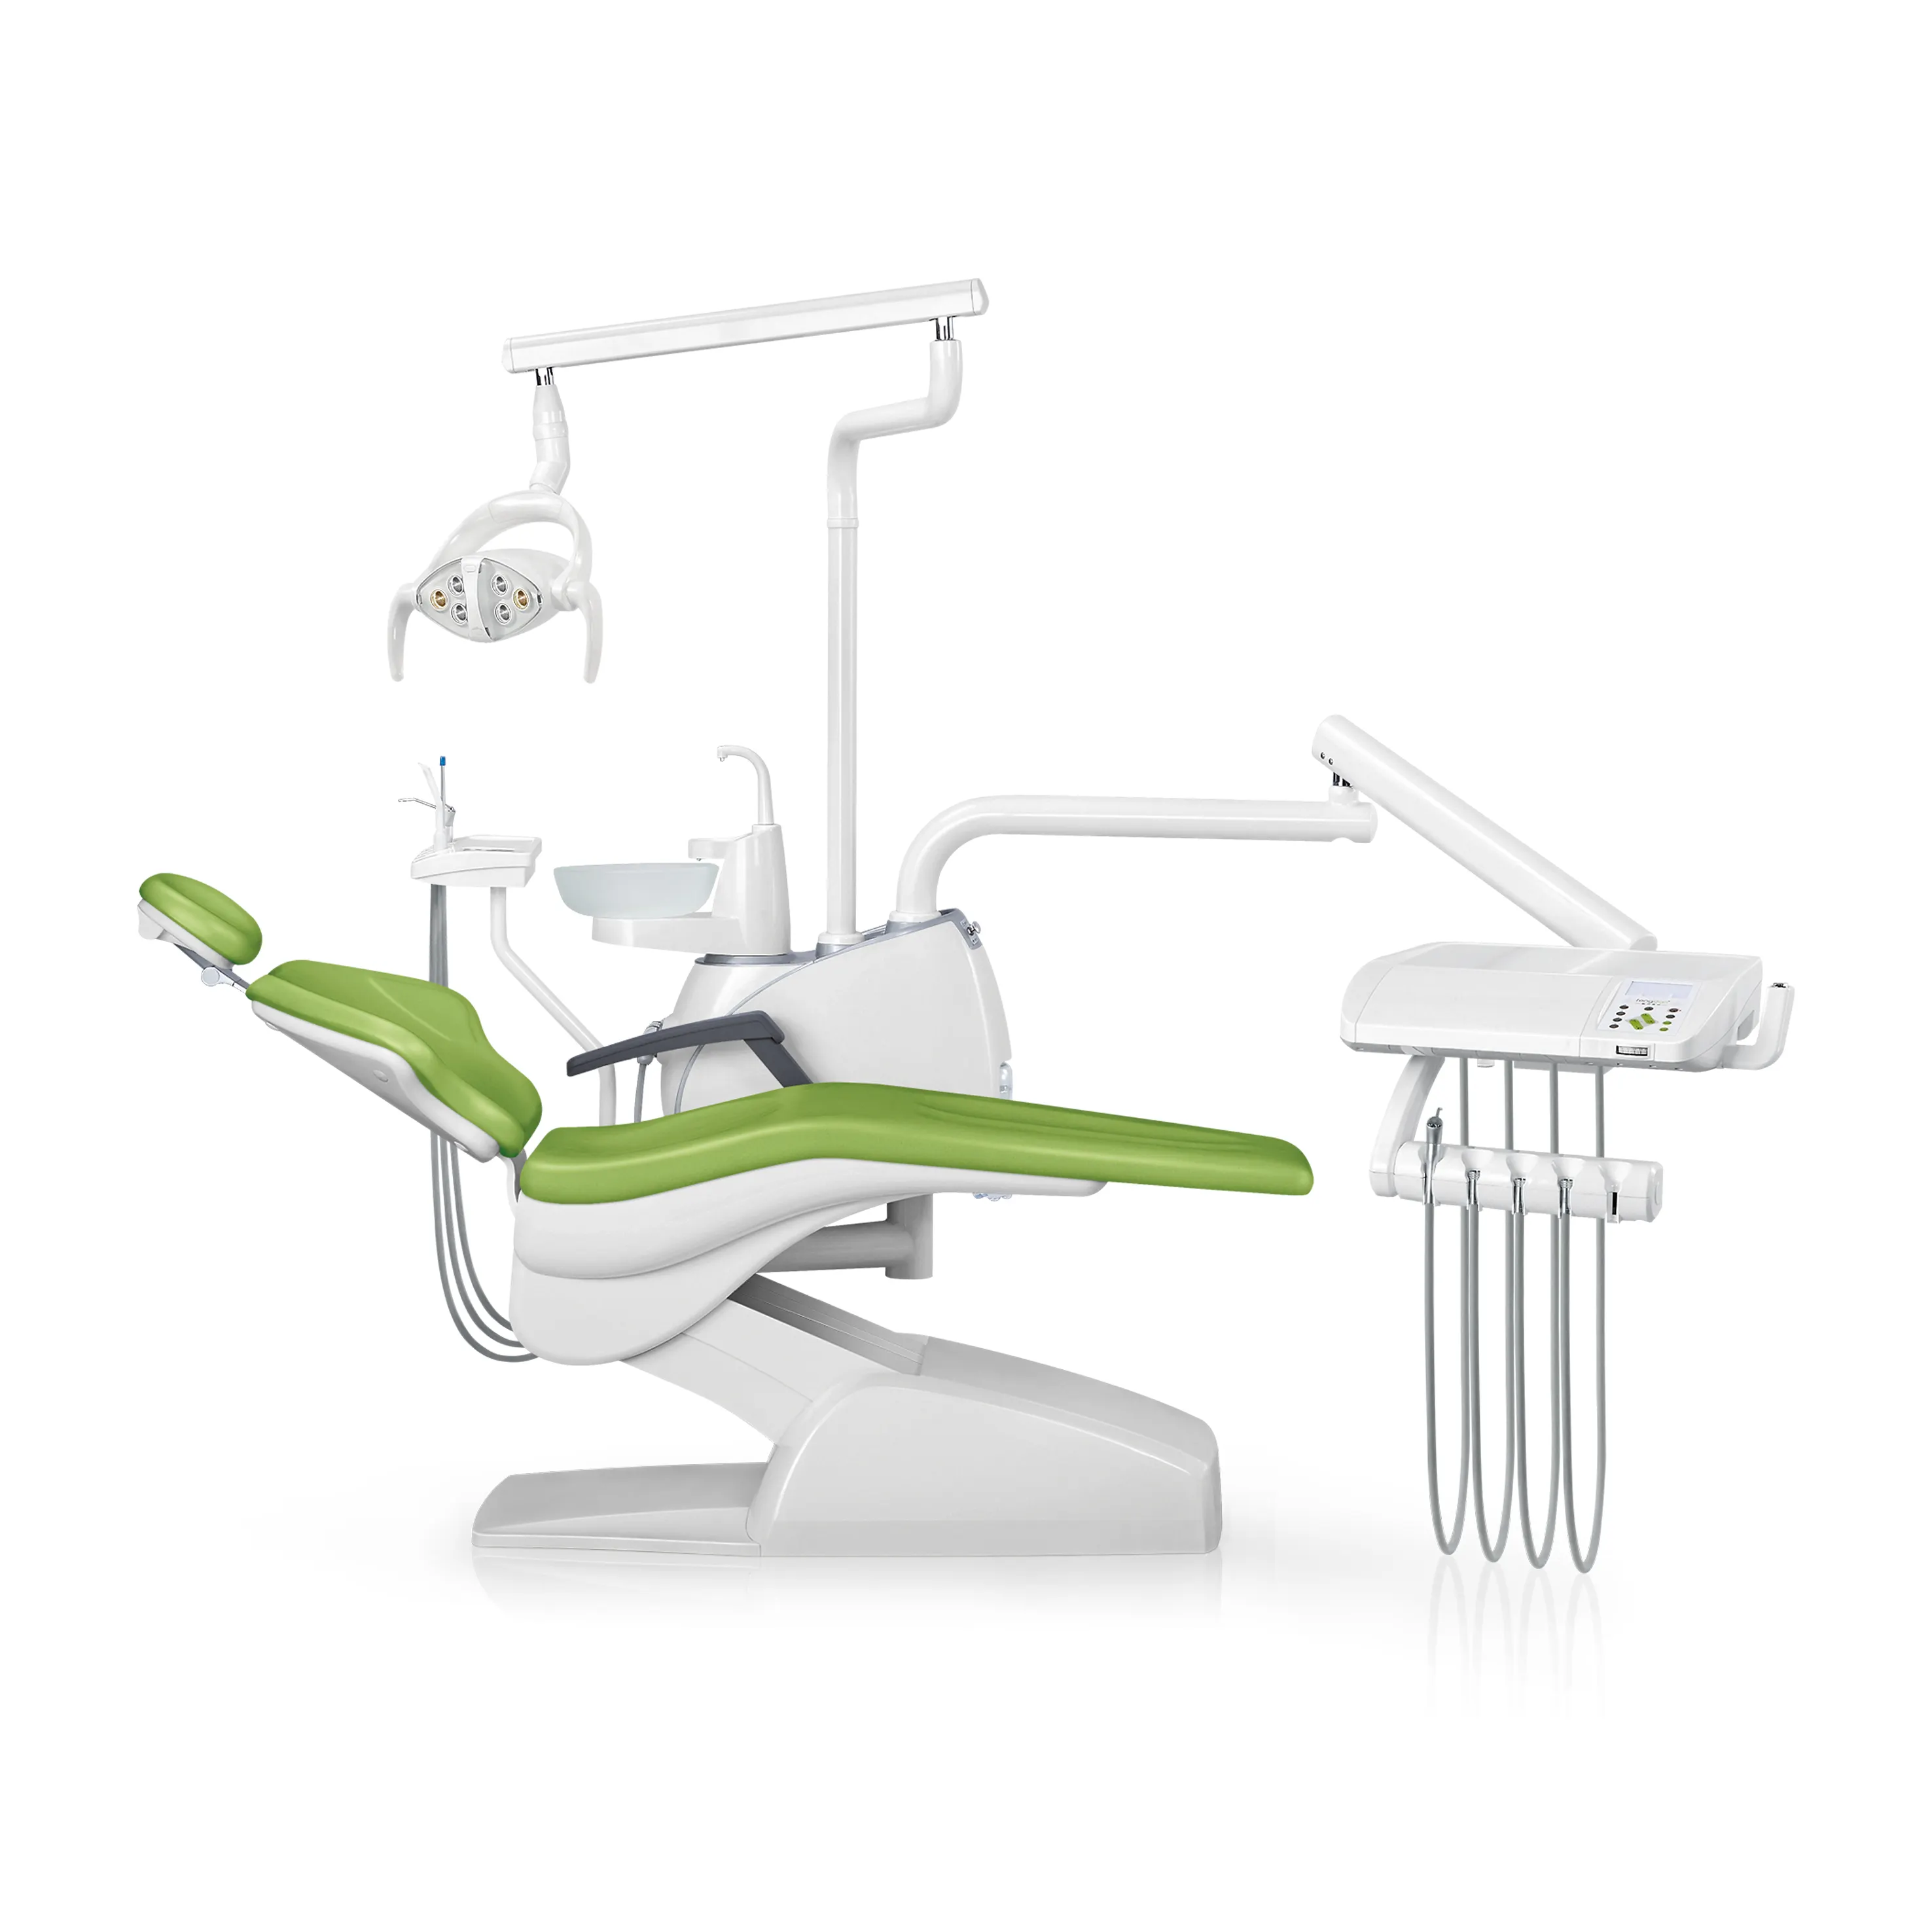 IN-M21 equipos médicos suministros plegable de los pacientes los precios por unidad de silla Dental portátil